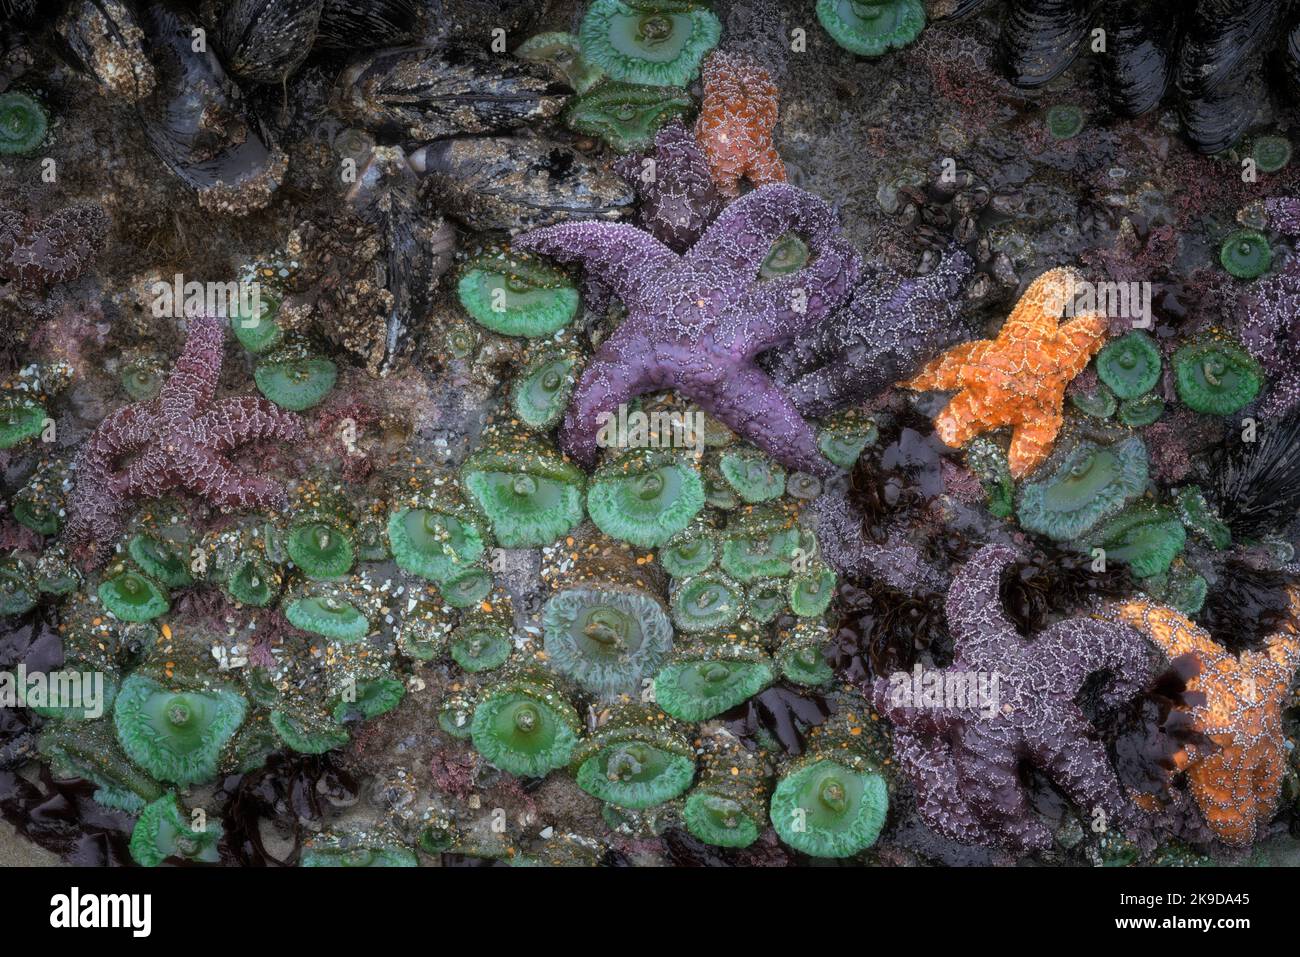 Farbenfrohe Seesterne und grüne Seeanemonen, die in diesem Sommer bei Ebbe an der zentralen Küste von Oregon bei Yachats enthüllt wurden. Stockfoto